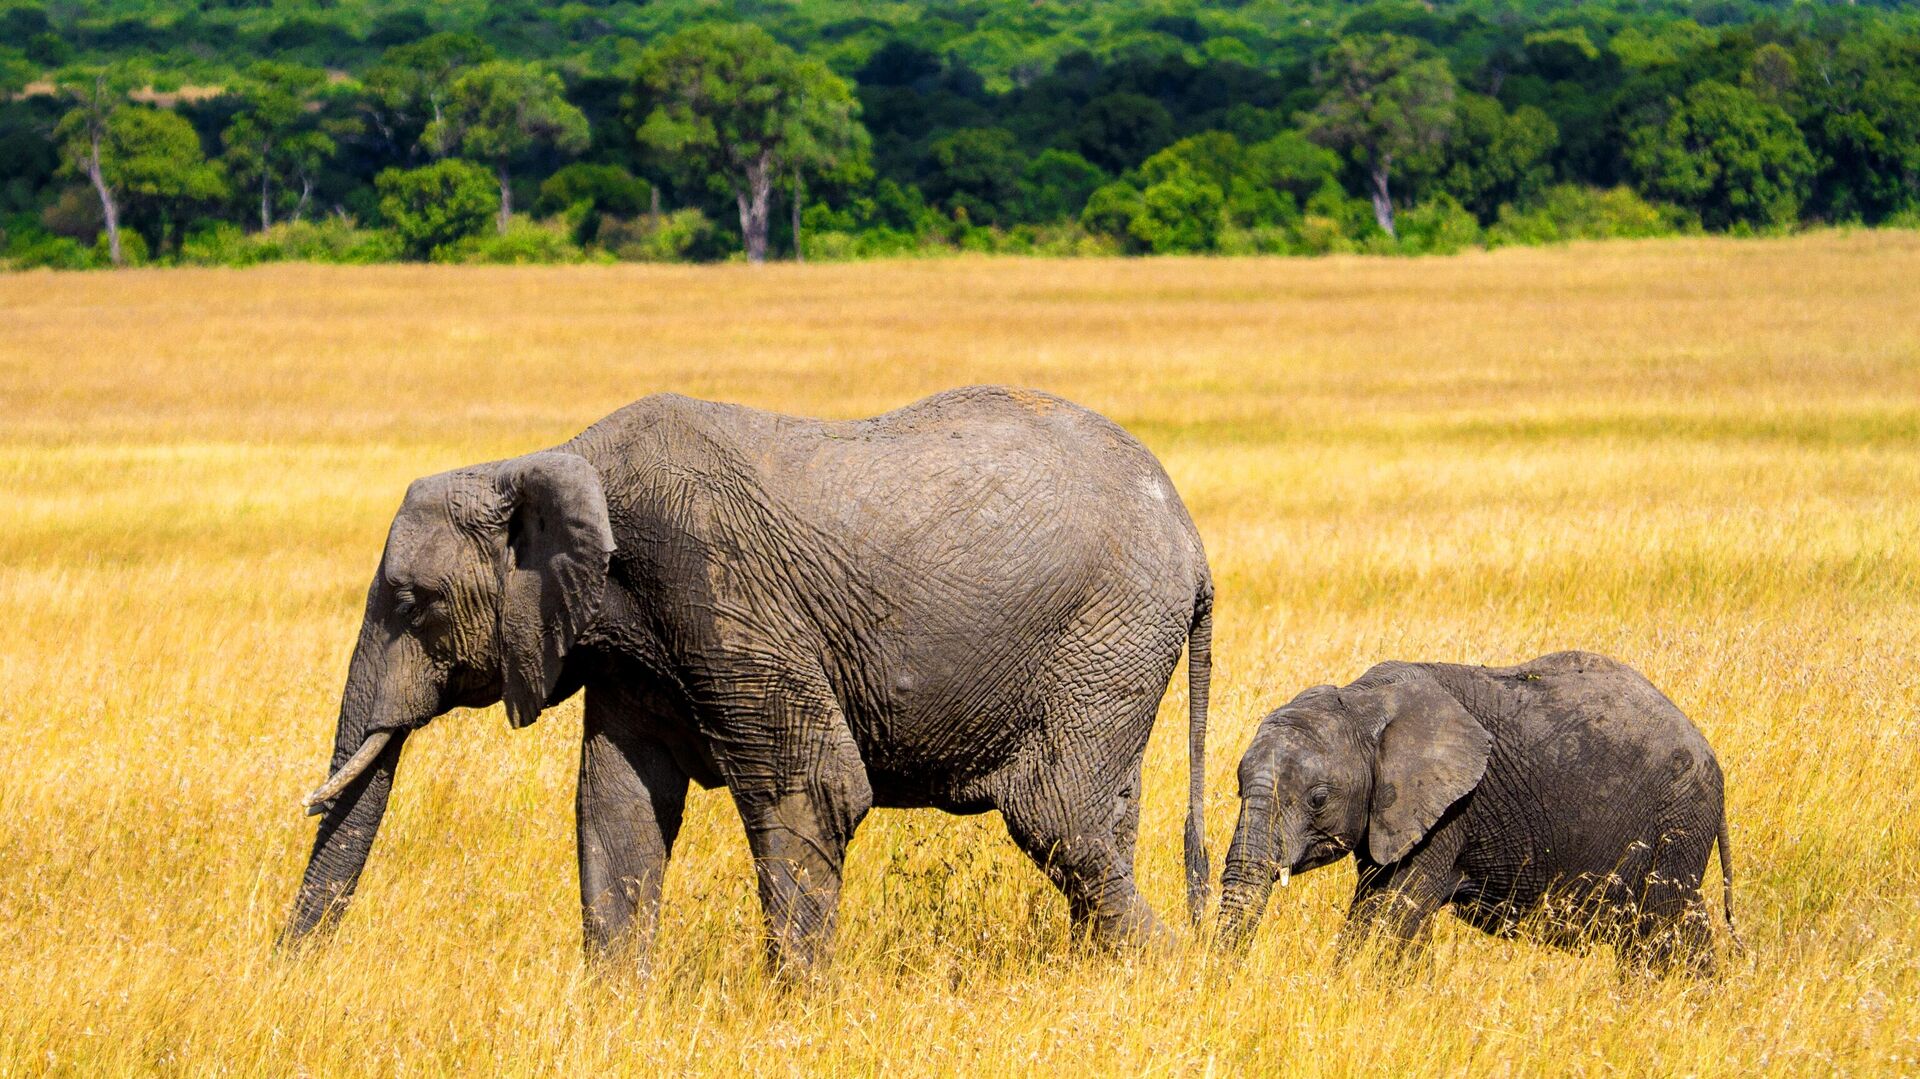 Elephants in the Masai Mara National Reserve in Kenya - 1920, 01/19/2022